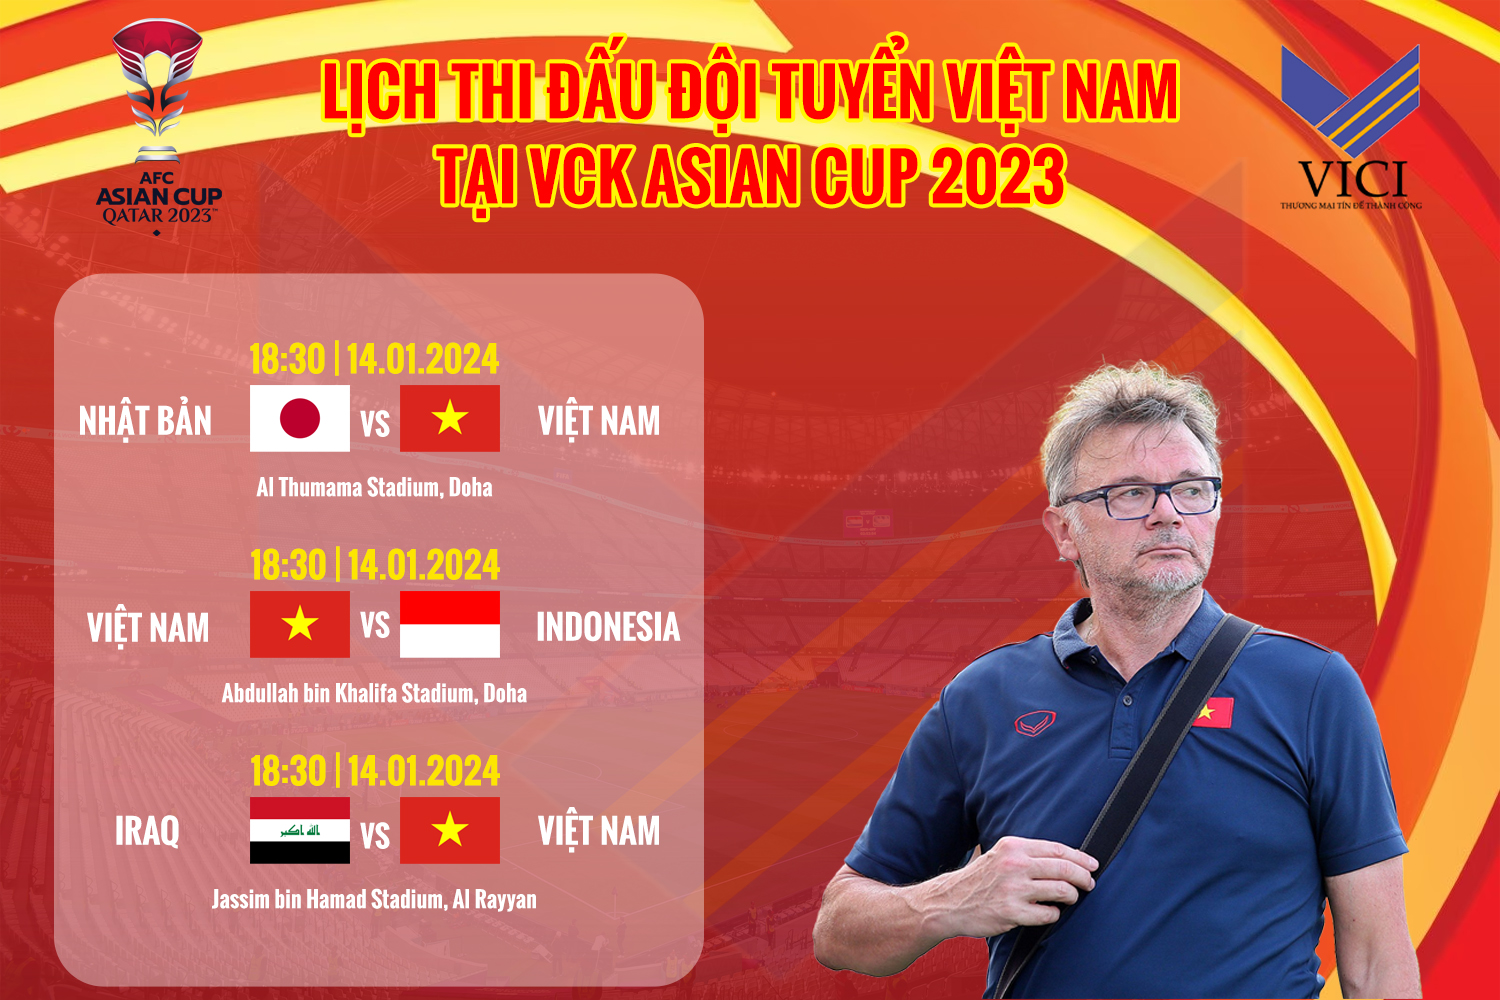 Lịch thi đấu đội tuyển Việt Nam tại Asian Cup 2023